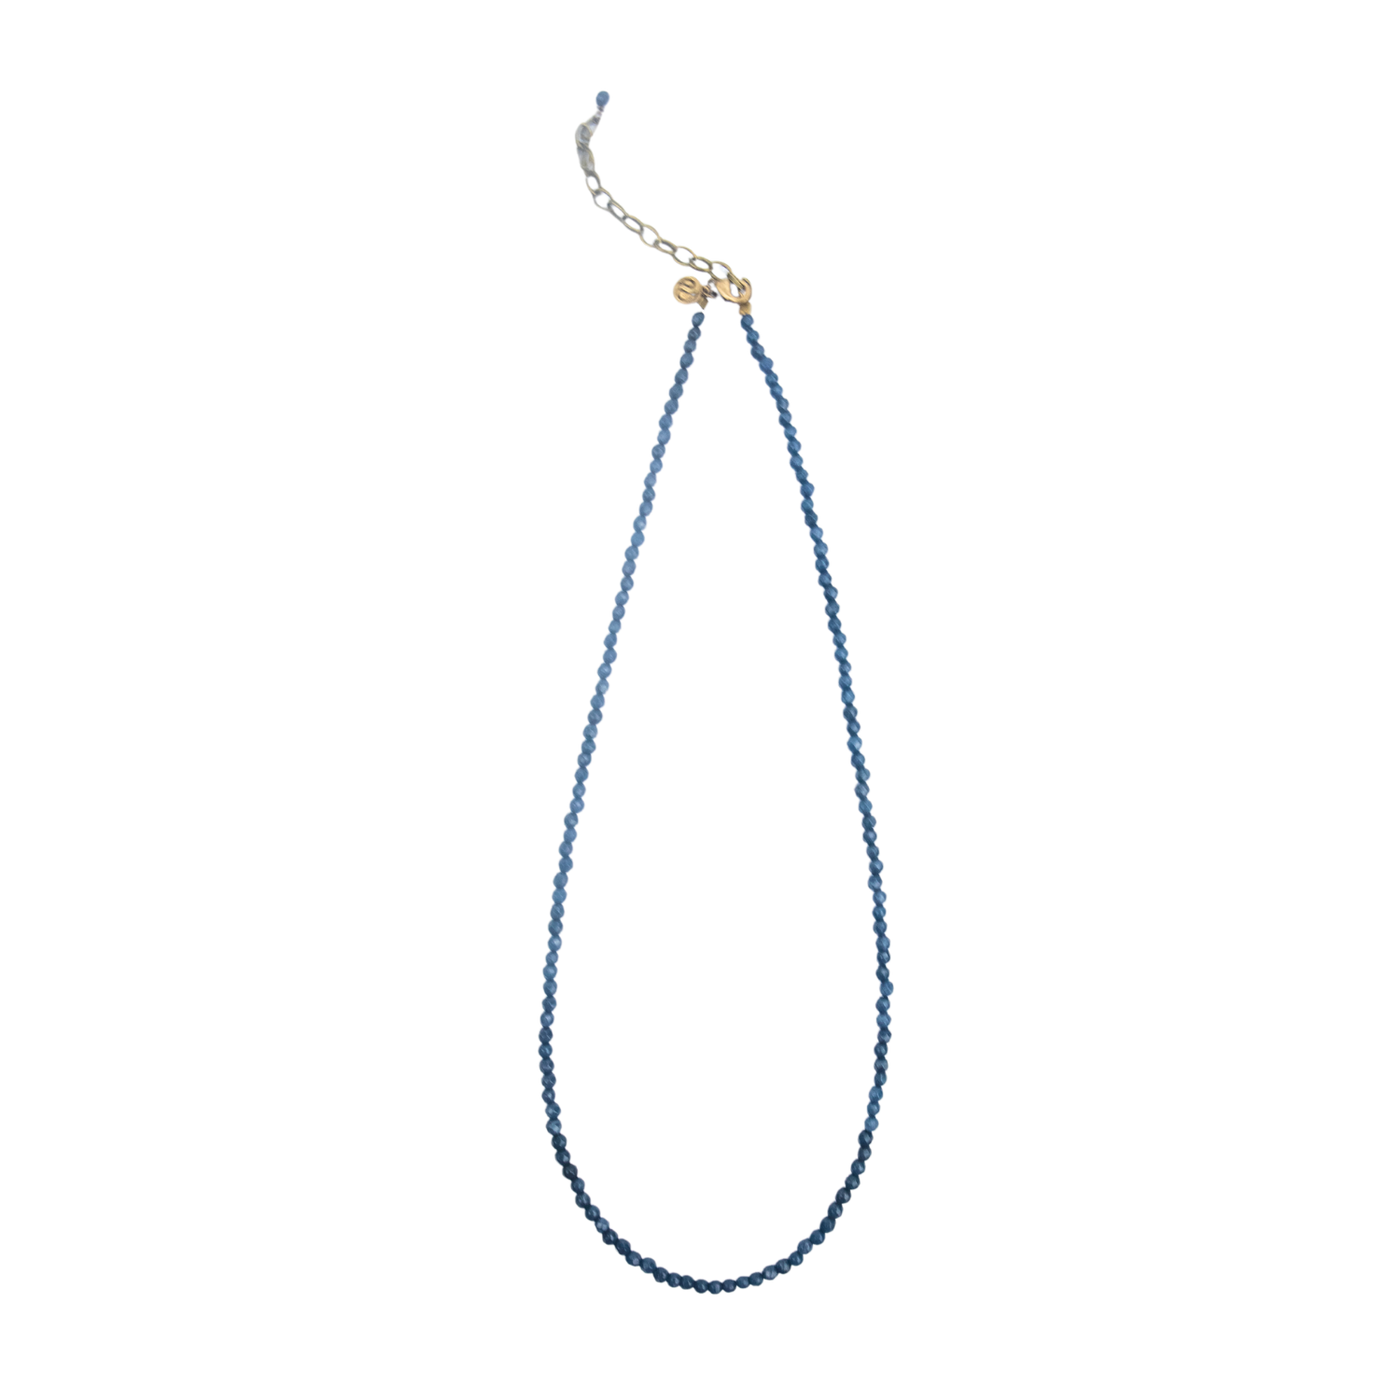 Sapphire Convertible Bracelet-Necklace